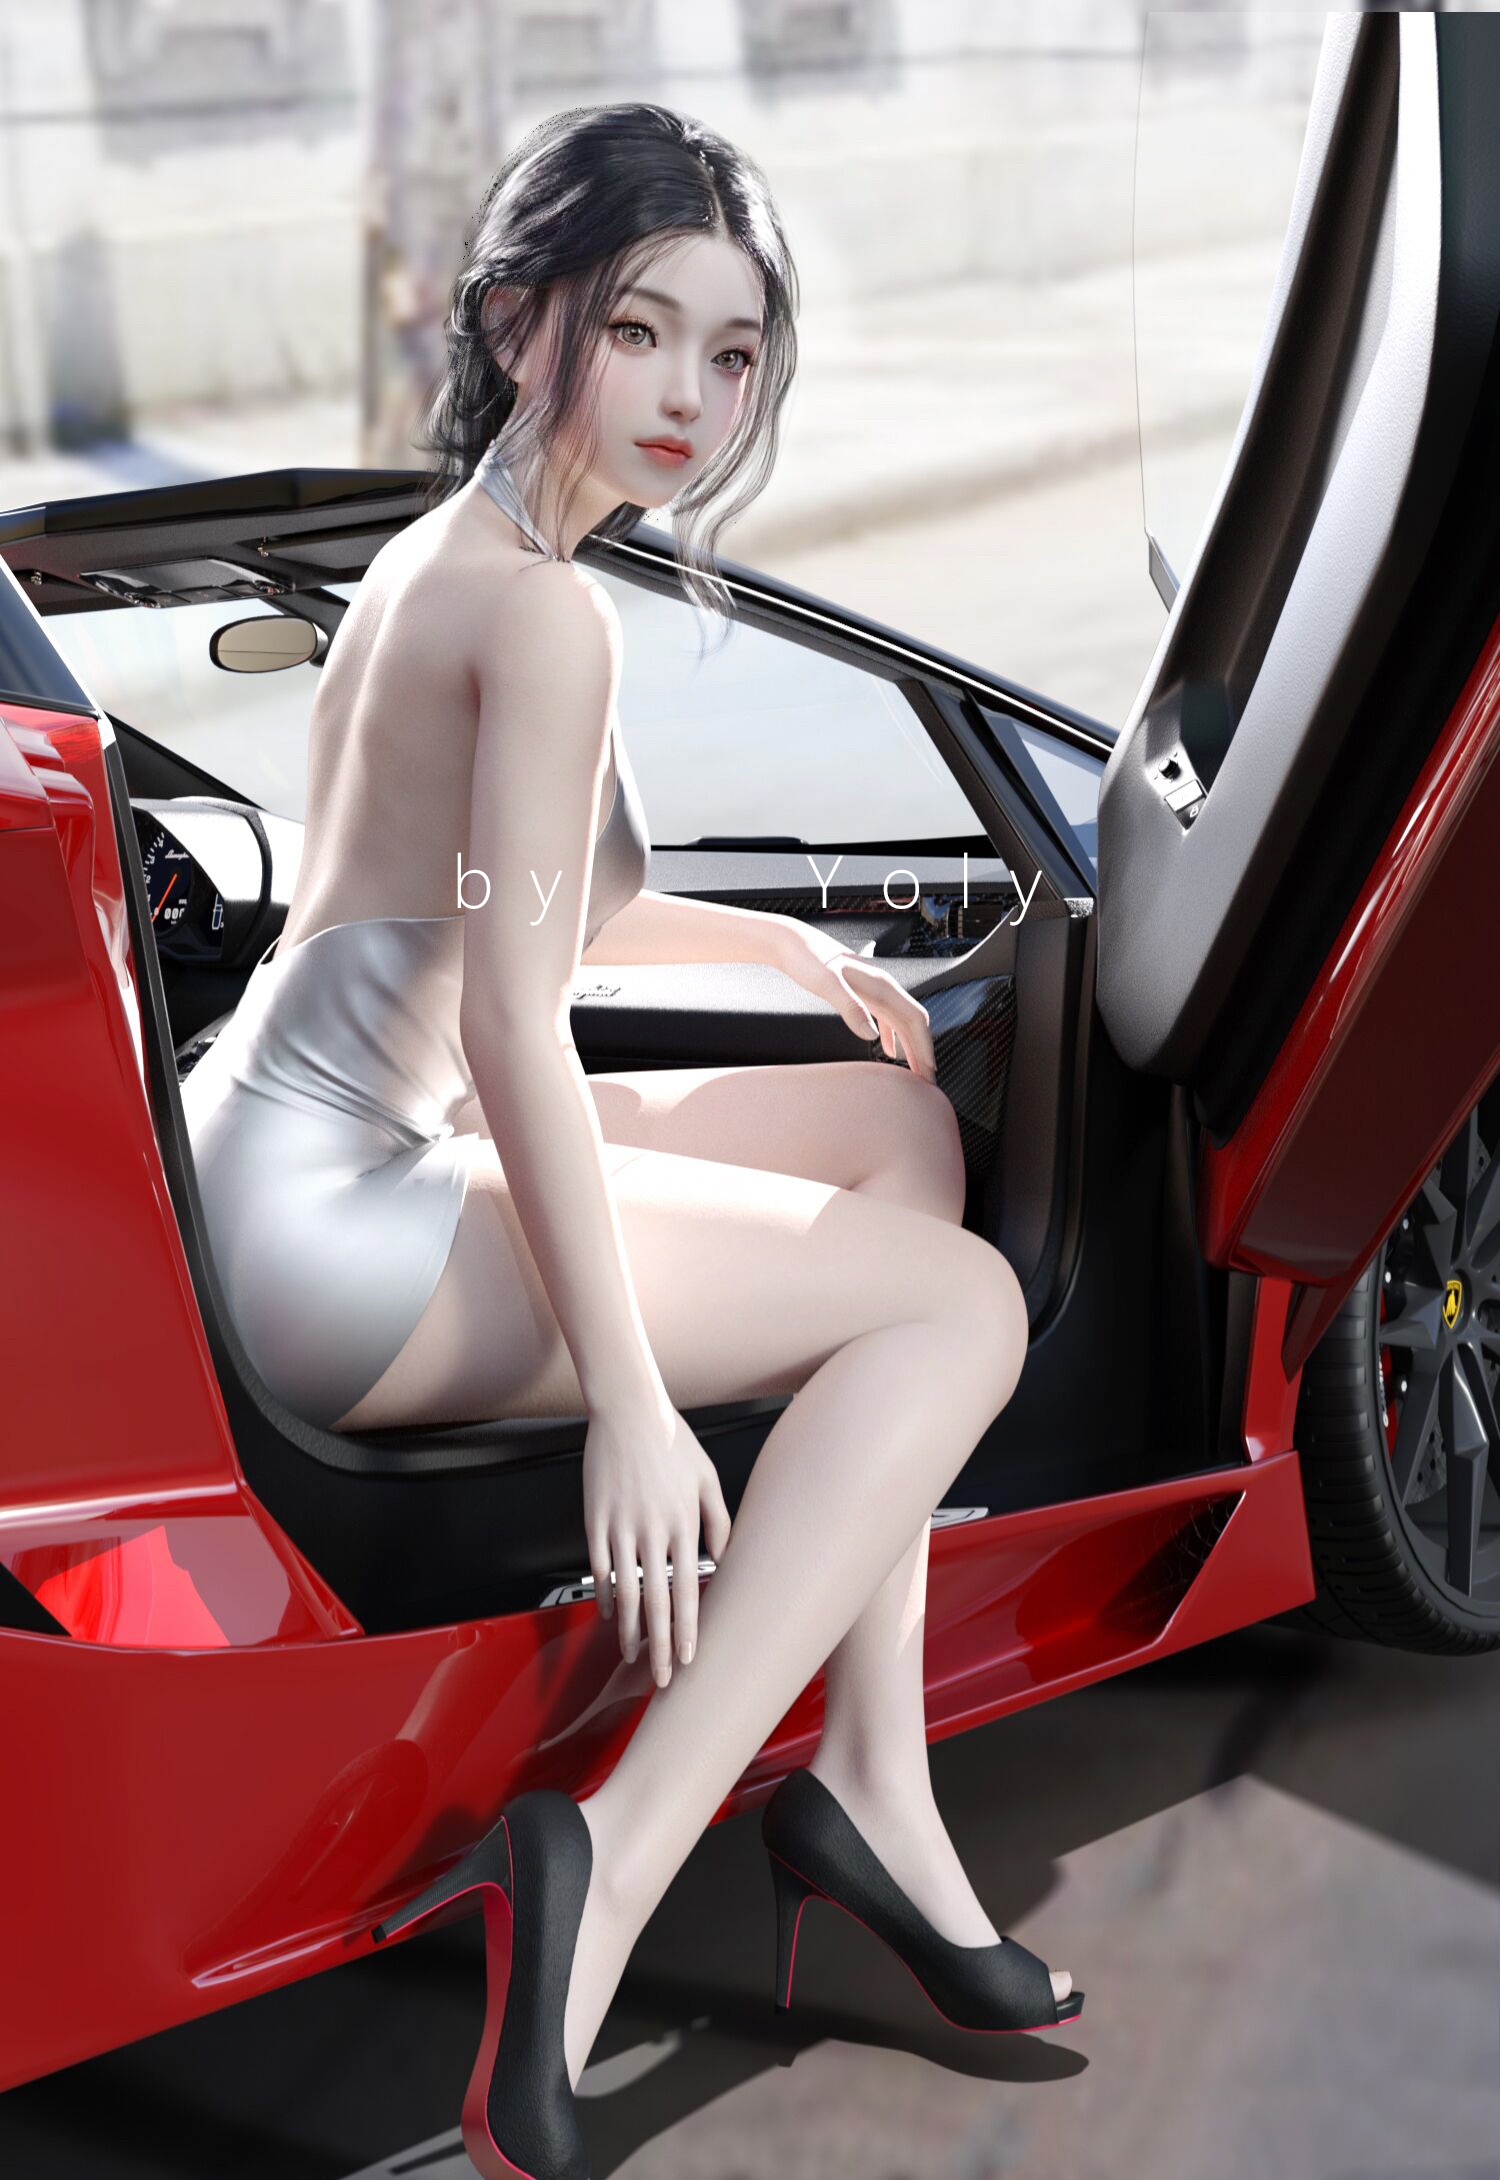 General 1500x2180 CGI digital art Yoly Asian heels high heels women Lamborghini Asterion car long hair black hair dress Lamborghini